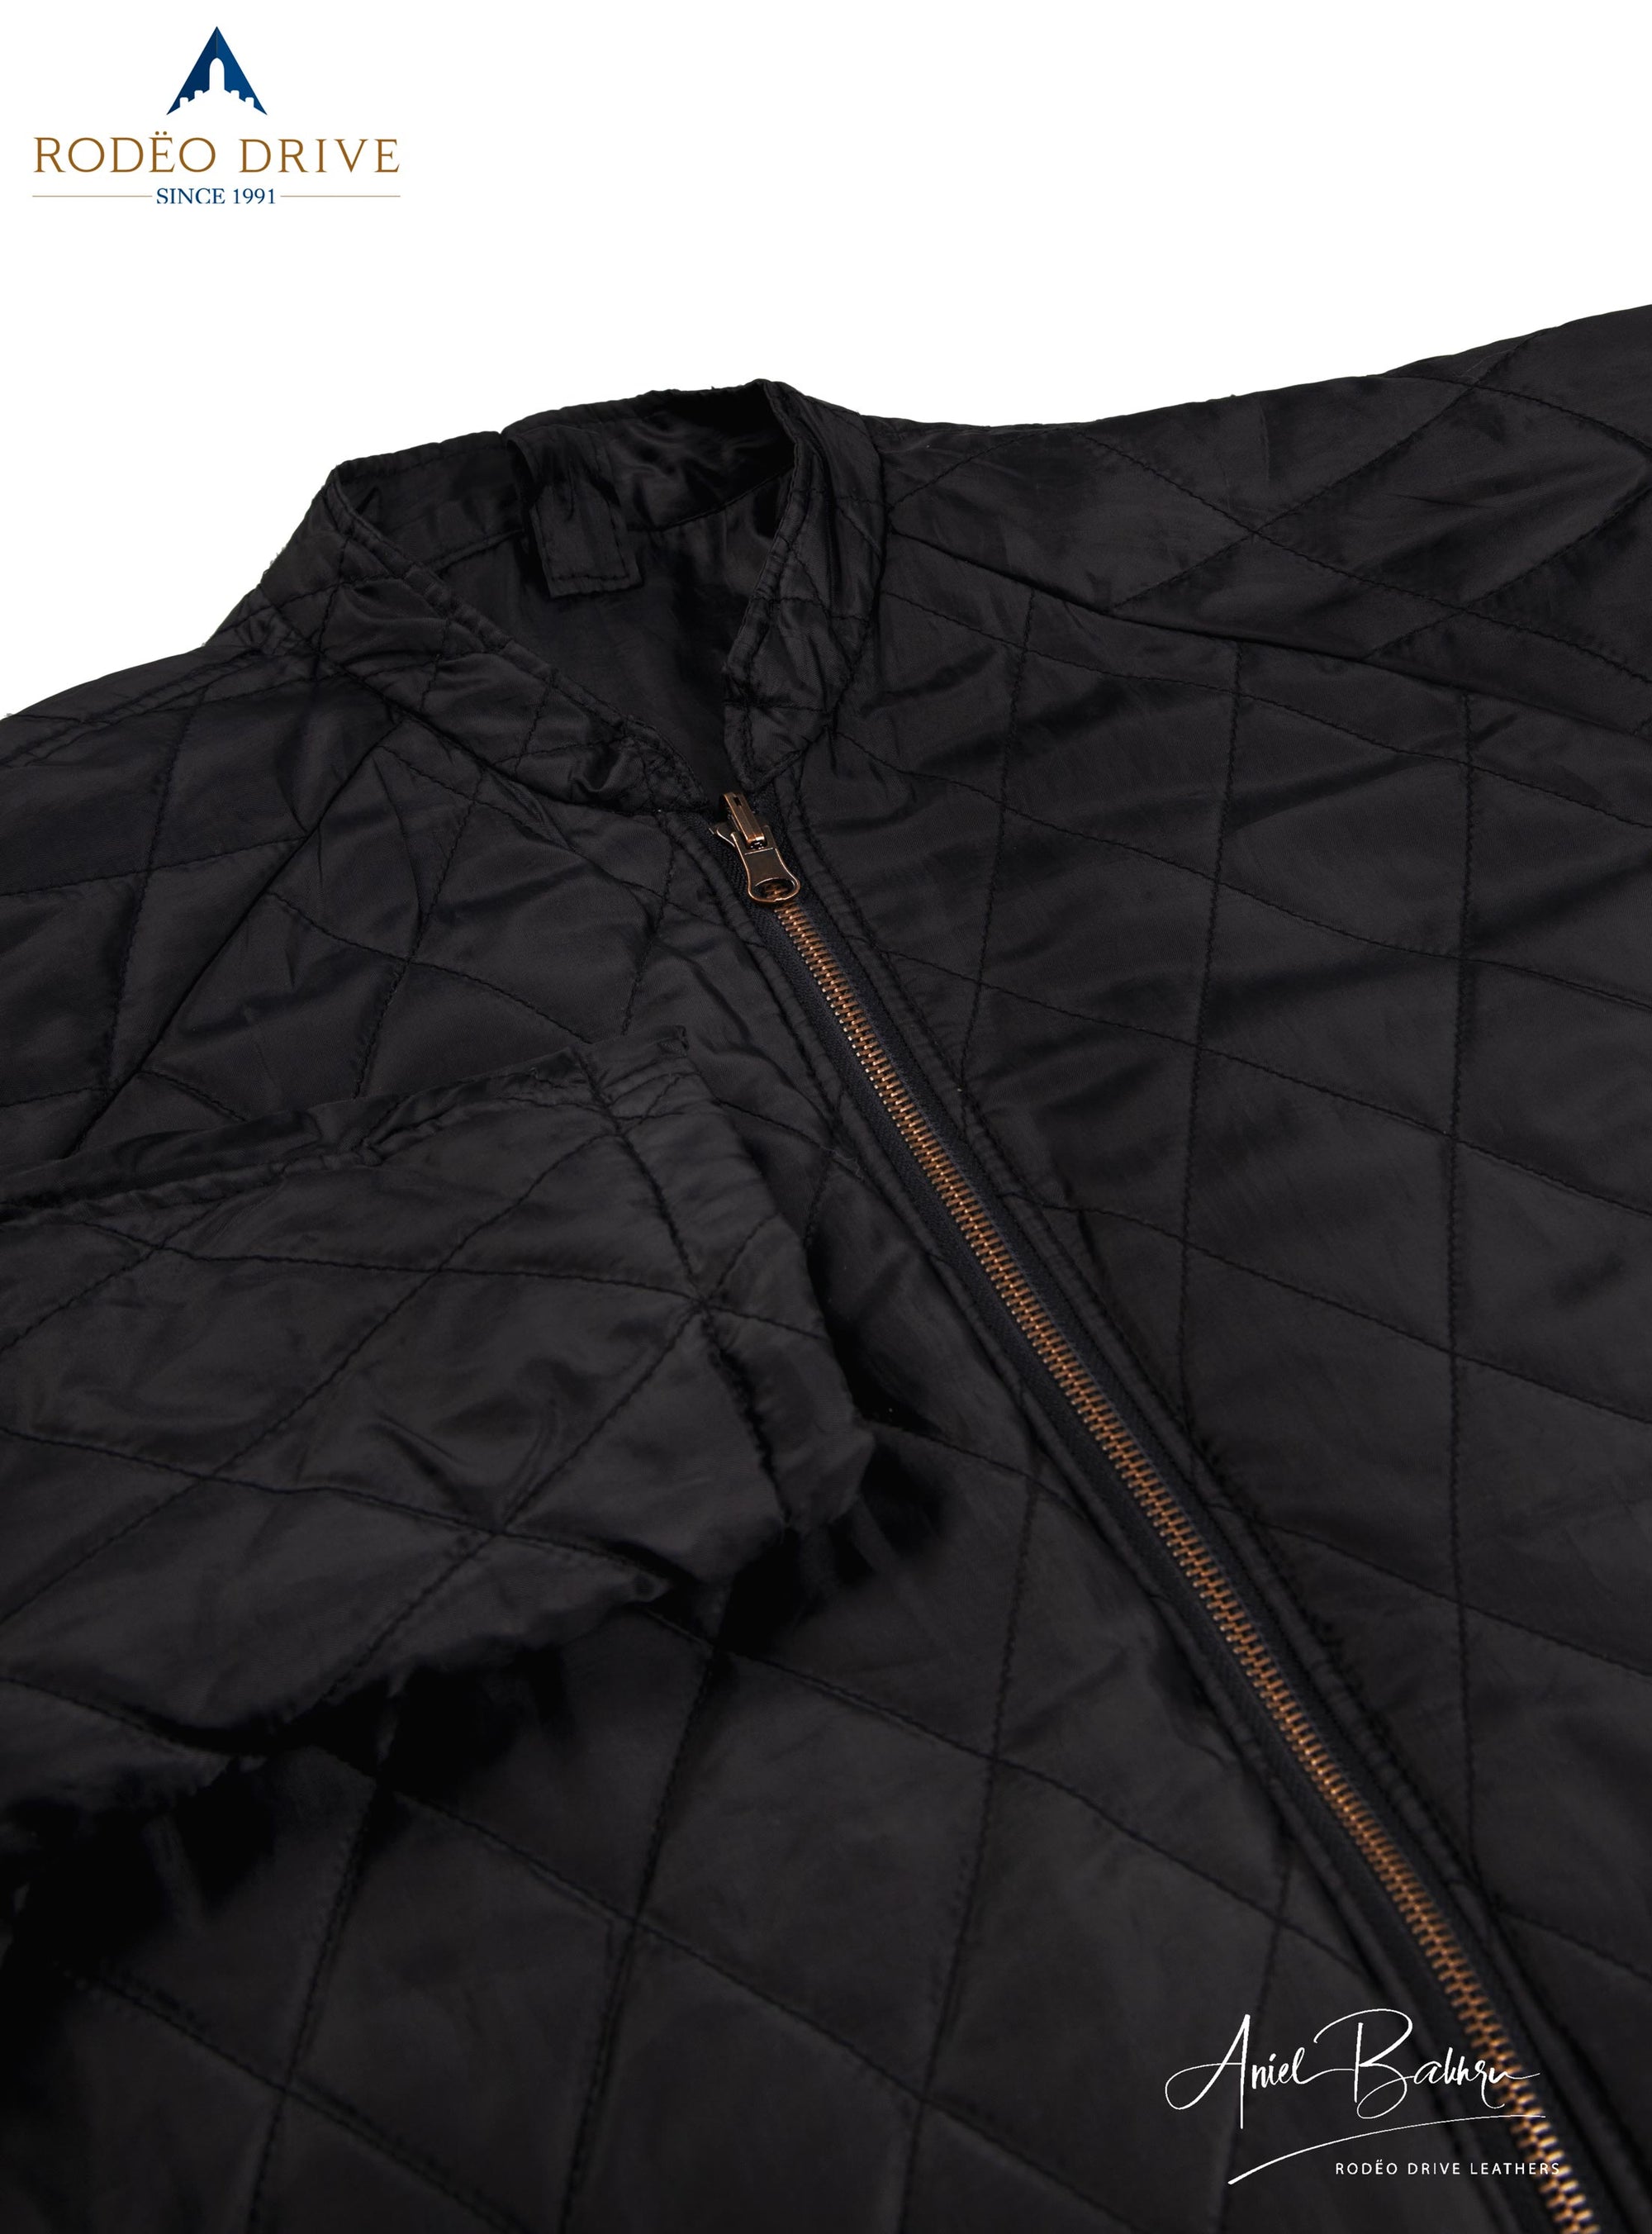 Zipped close image of Leather jacket image